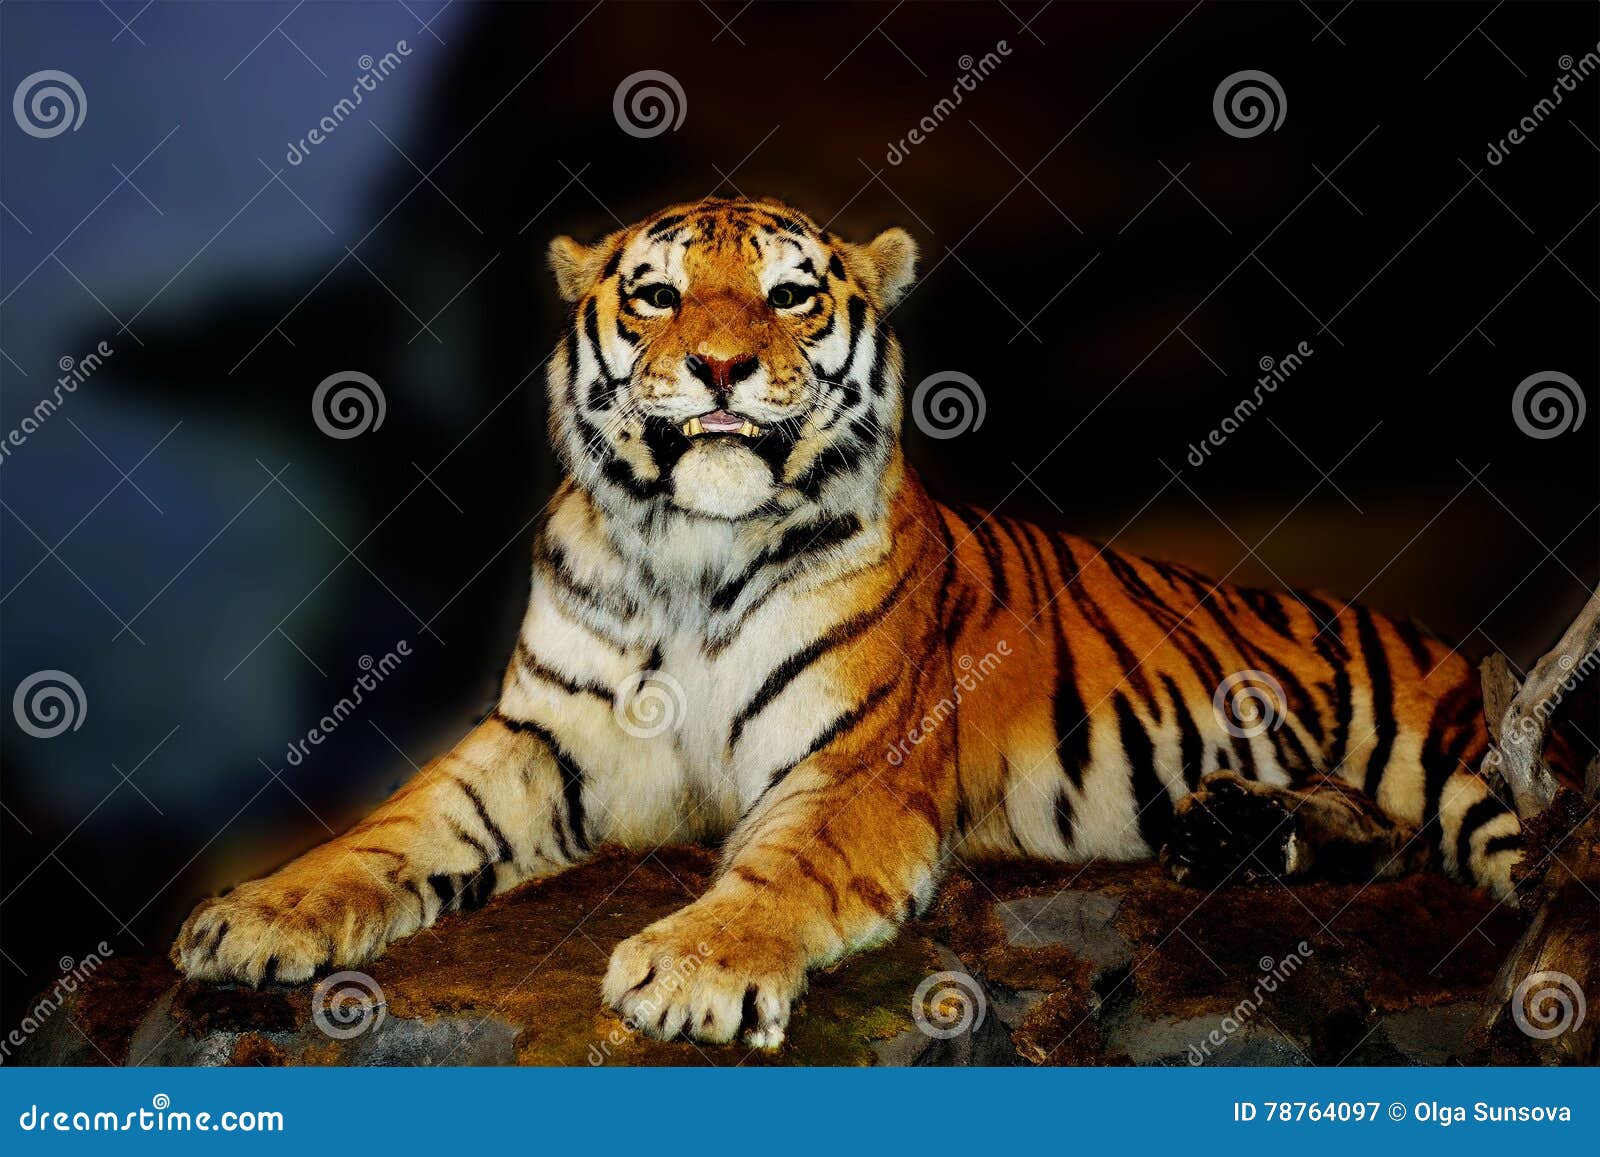 Tigre, depredador, animal, rayado, Amur, especie hermosa, rara, mamífero La caza depredadora del tigre está esperando la presa Una piel valiosa, una especie en peligro Incluido en el libro rojo